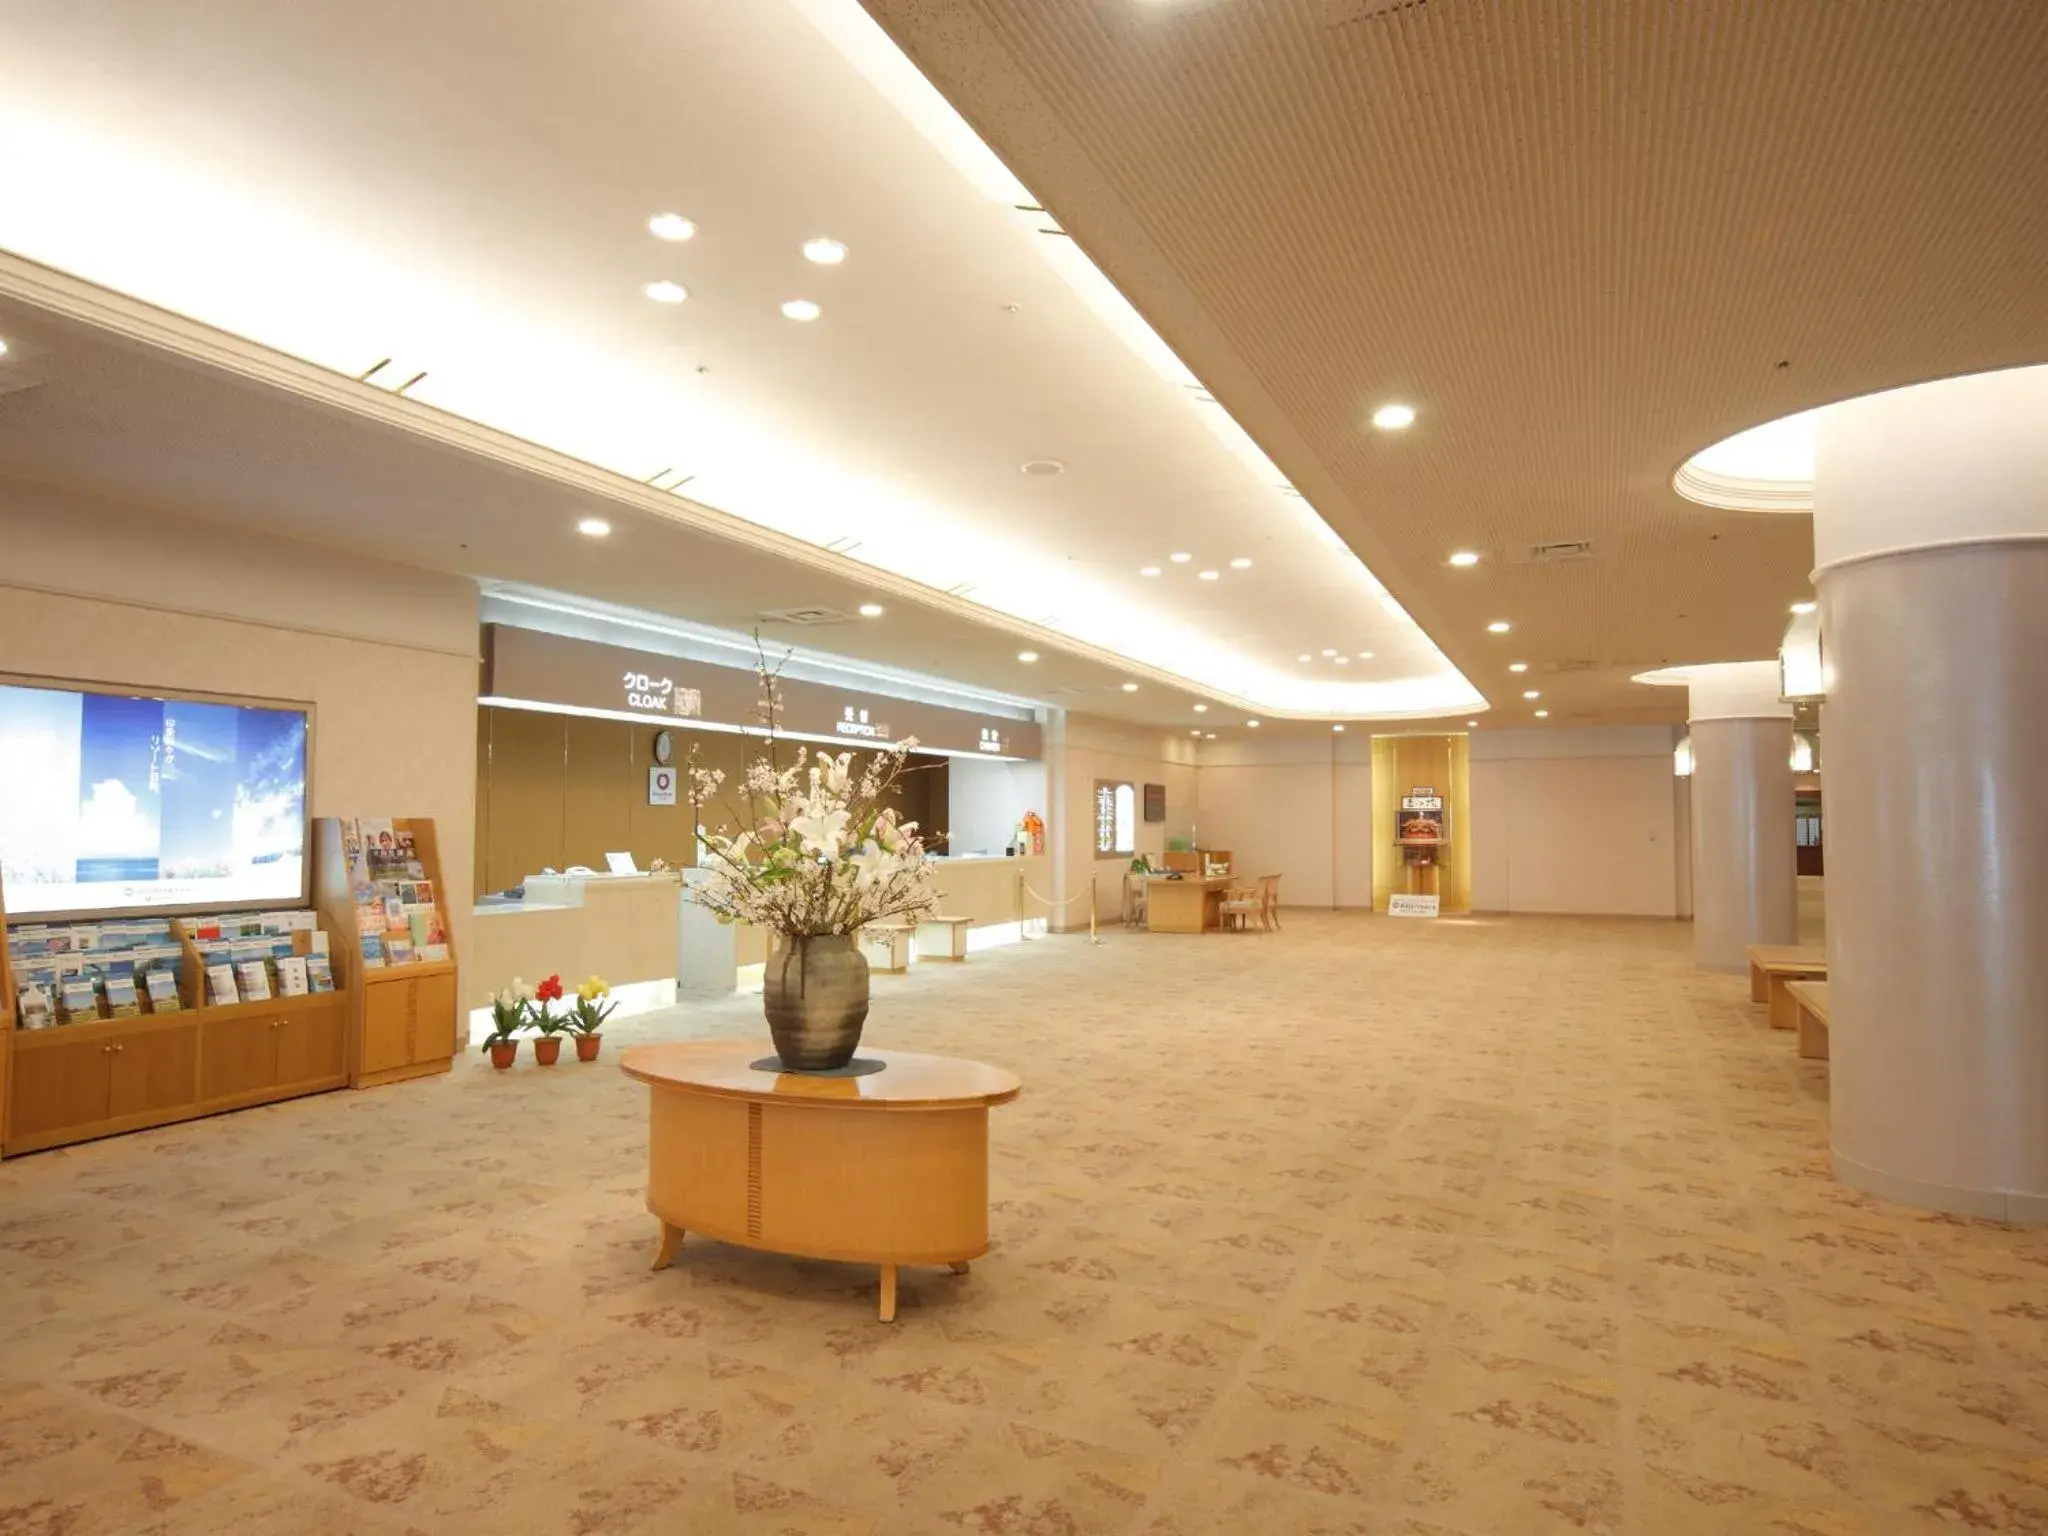 Lobby or reception, Lobby/Reception in Tonami Royal Hotel